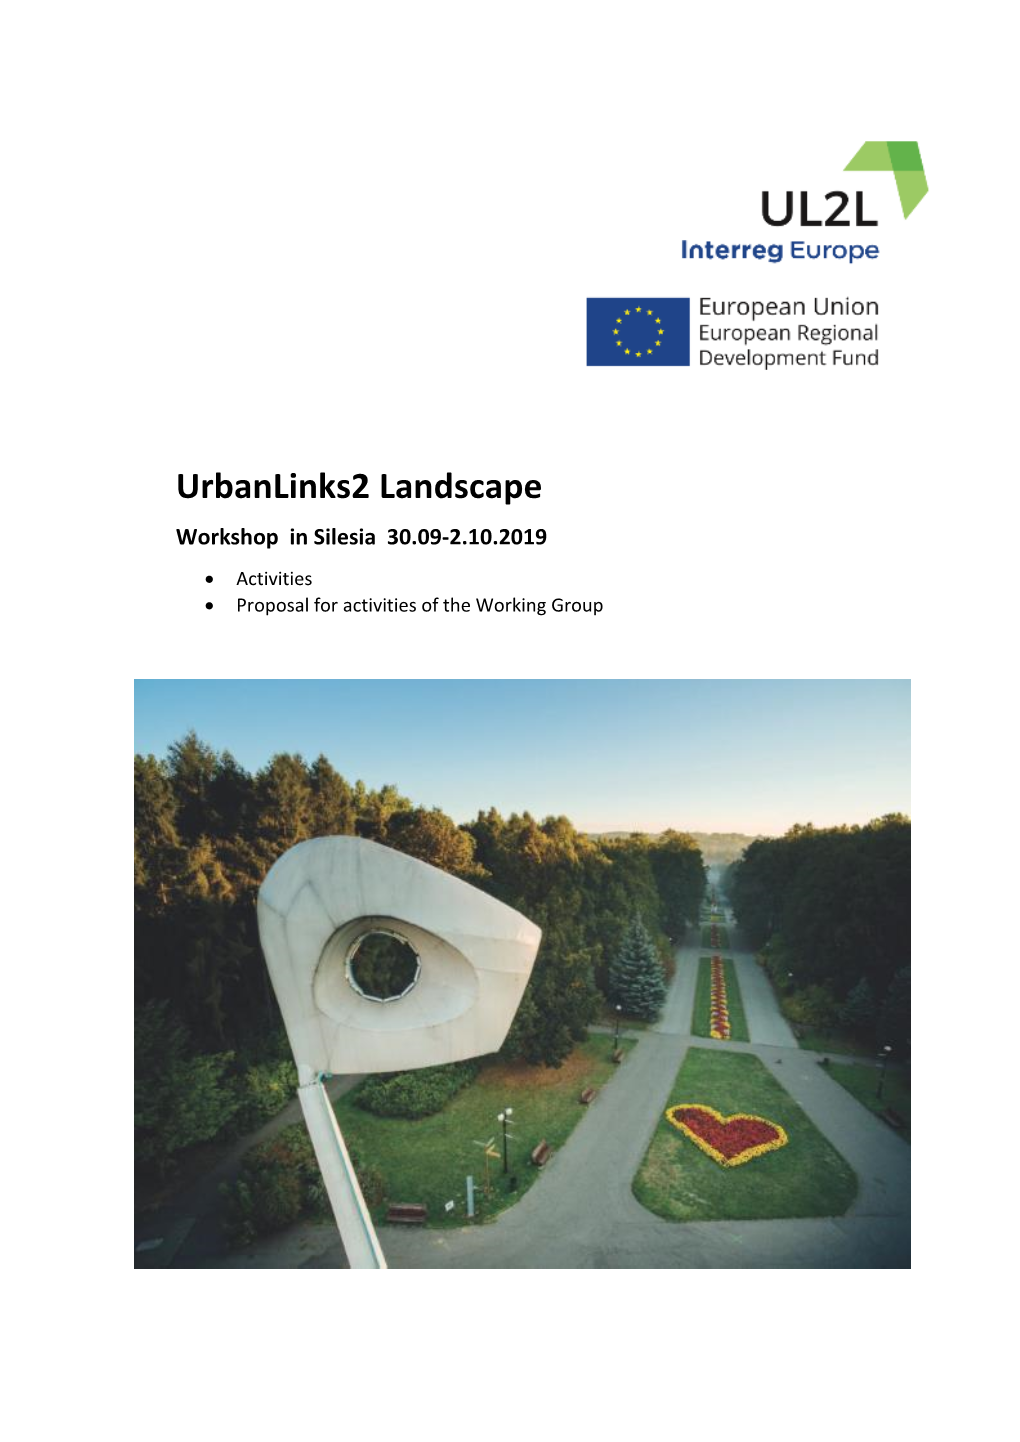 Urbanlinks2 Landscape Silesia